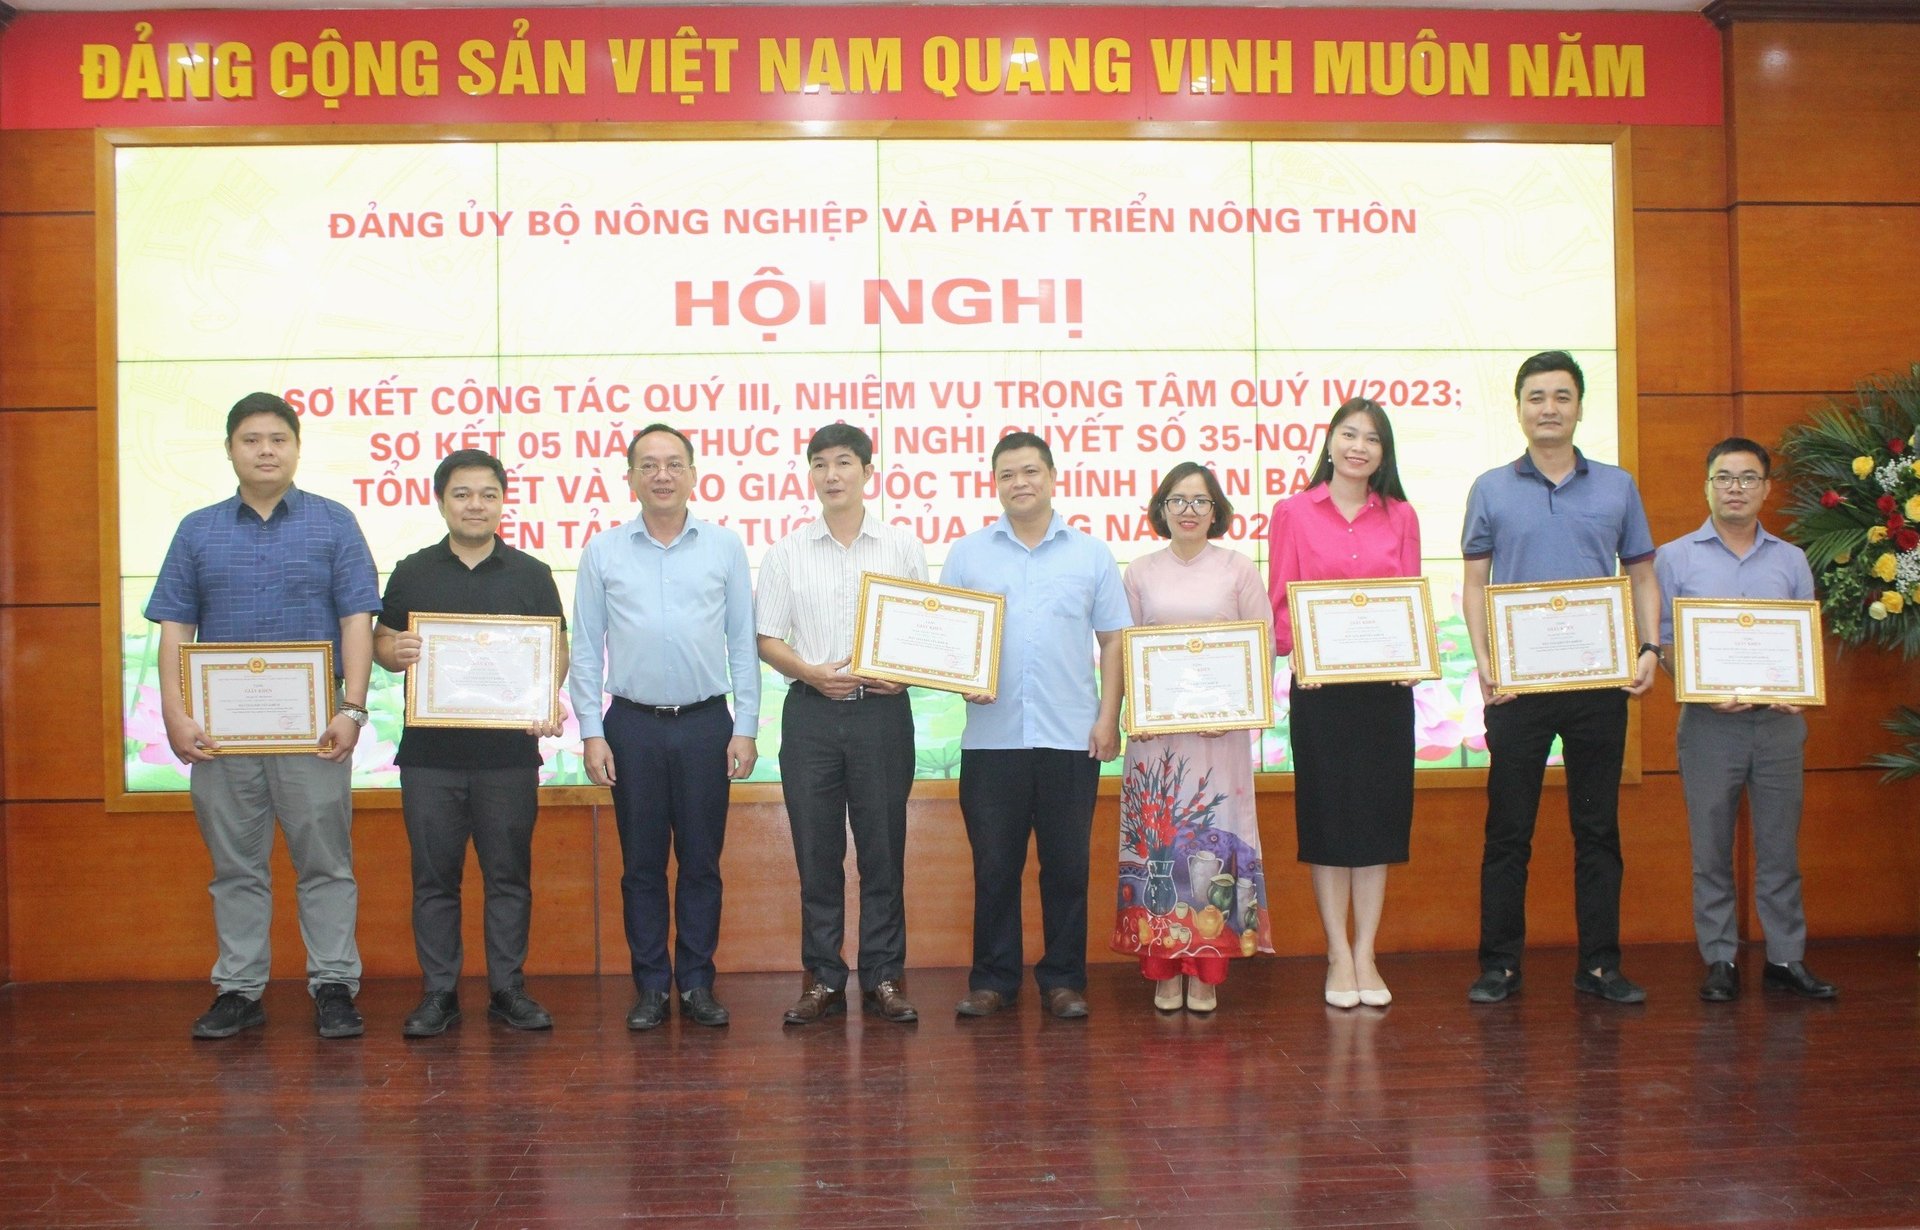 Đảng ủy Bộ NN-PTNT trao giấy khen cho 30 tác giả, nhóm tác giả có bài dự thi đoạt giải C và giải khuyến khích cuộc thi chính luận về bảo vệ nền tảng tư tưởng của Đảng năm 2023 trong Đảng bộ Bộ NN-PTNT.